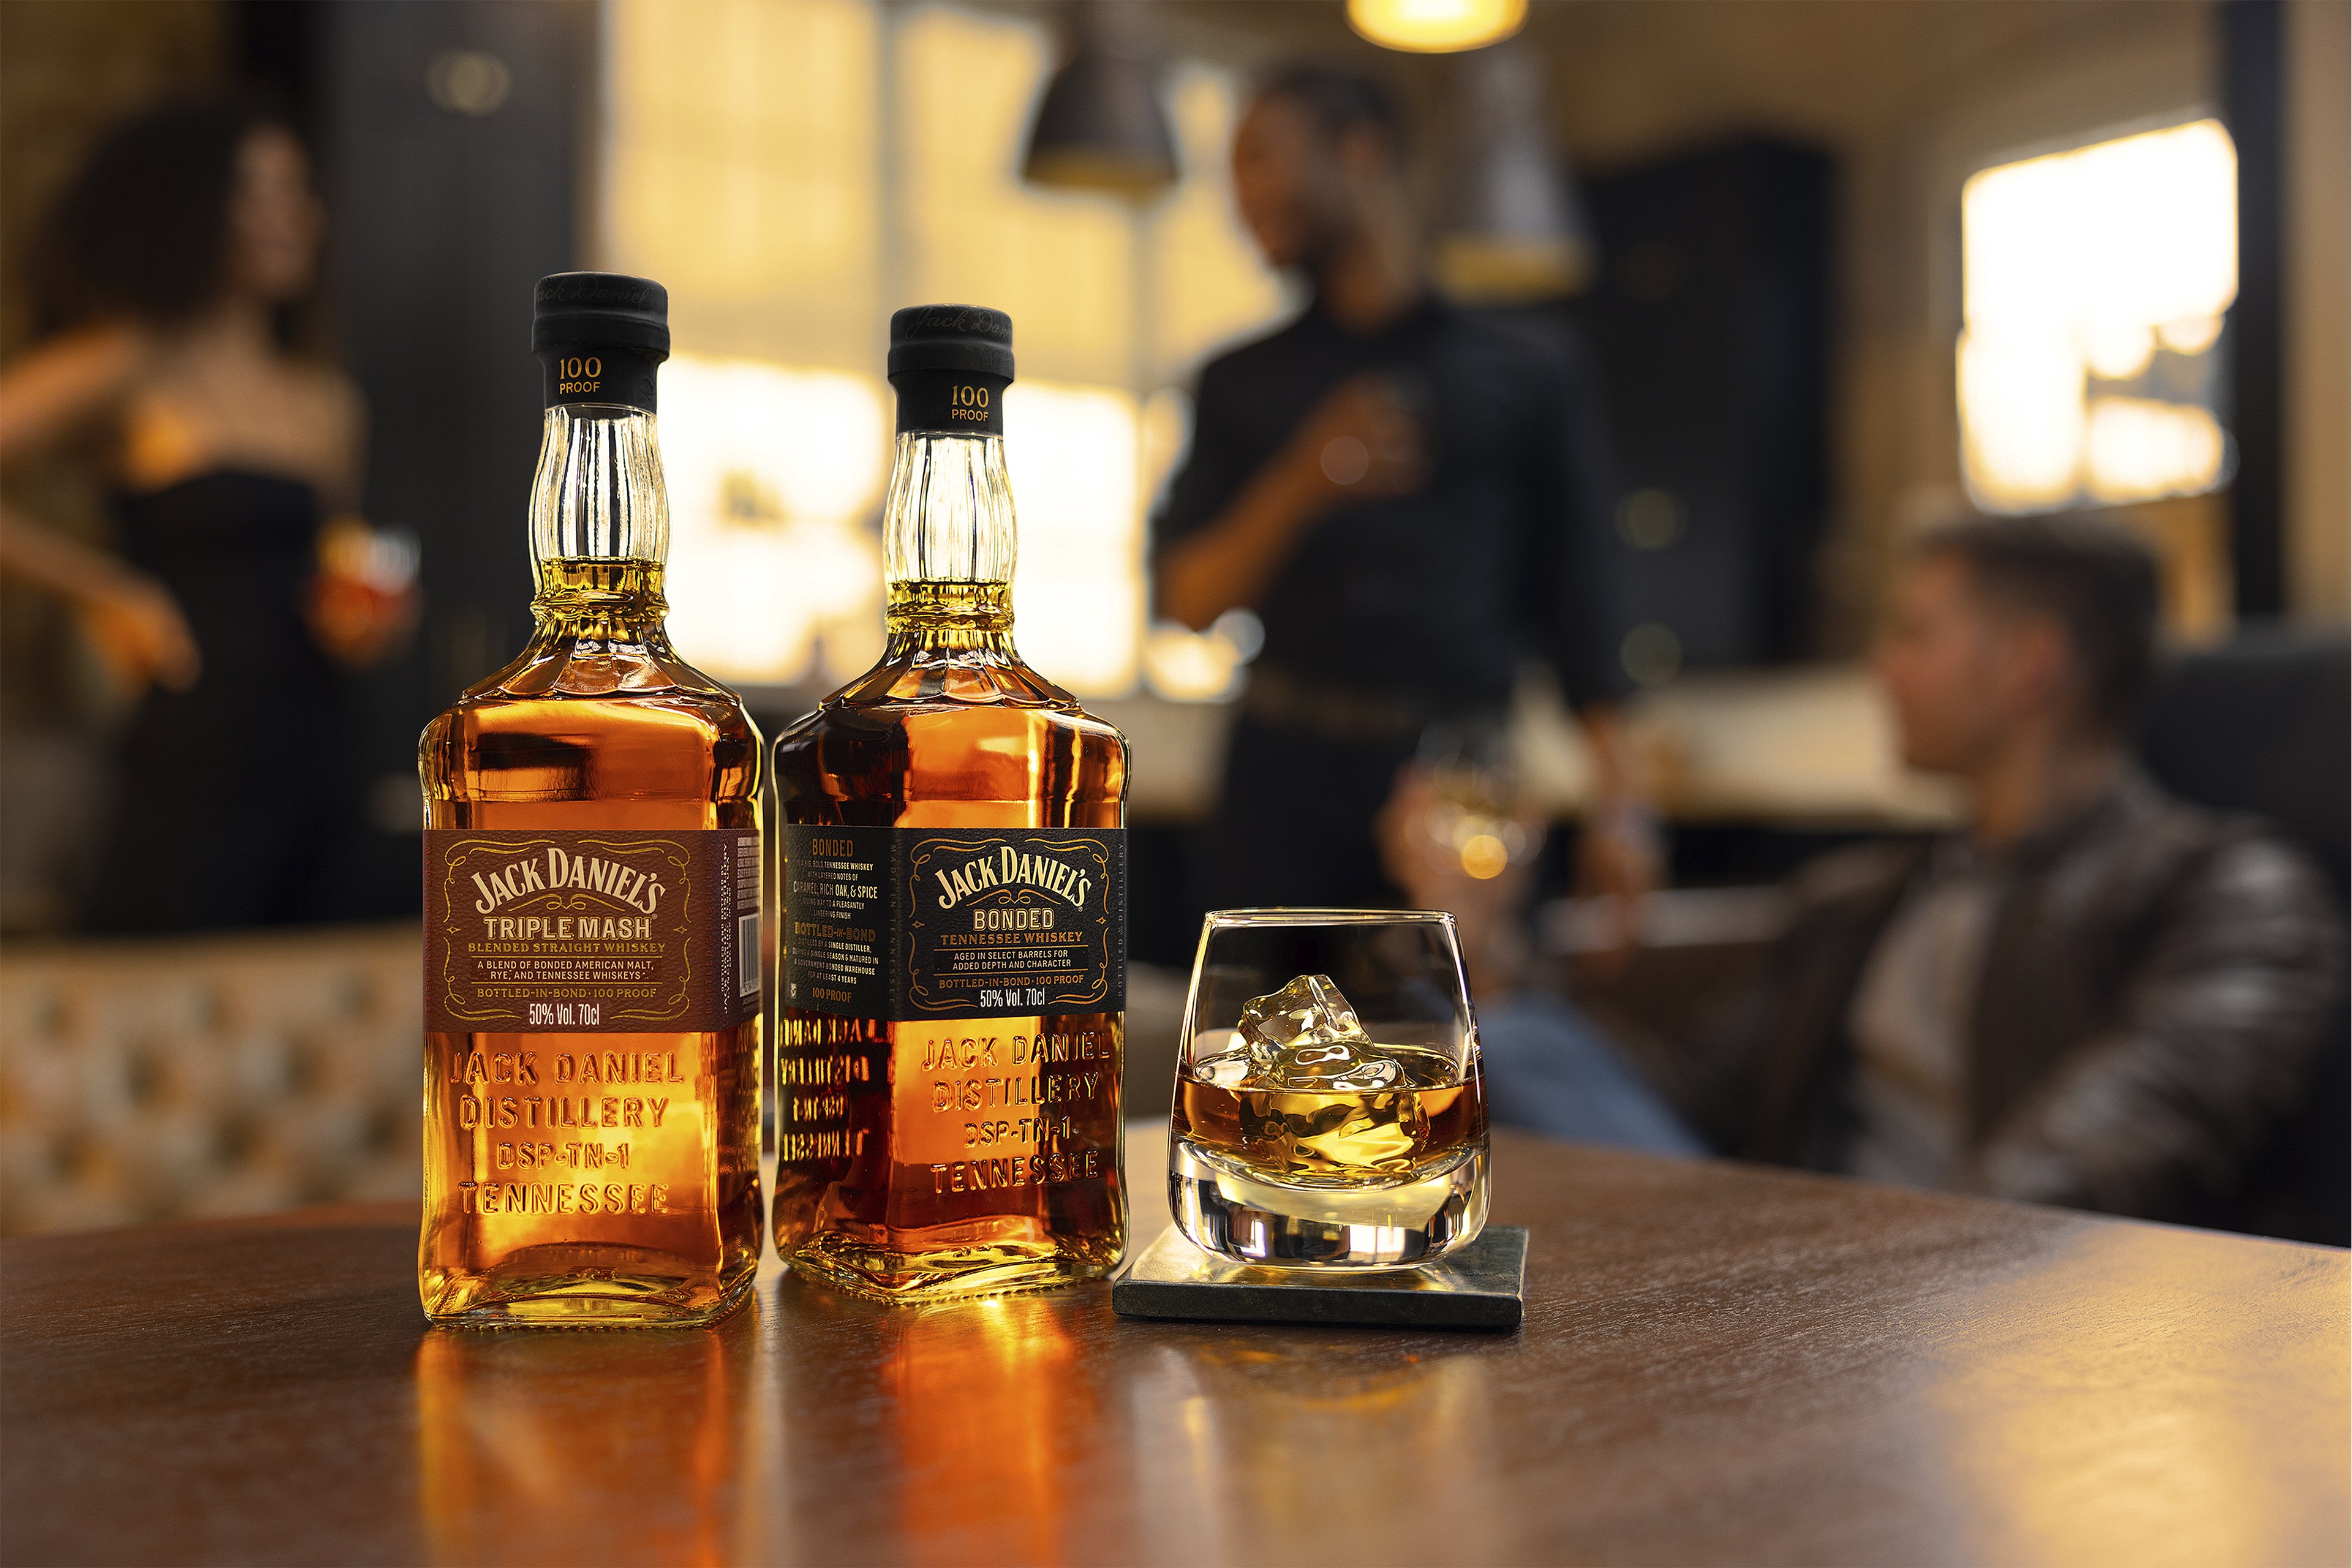 Una icona global ret homenatge a l'excel·lència en l'elaboració de whisky